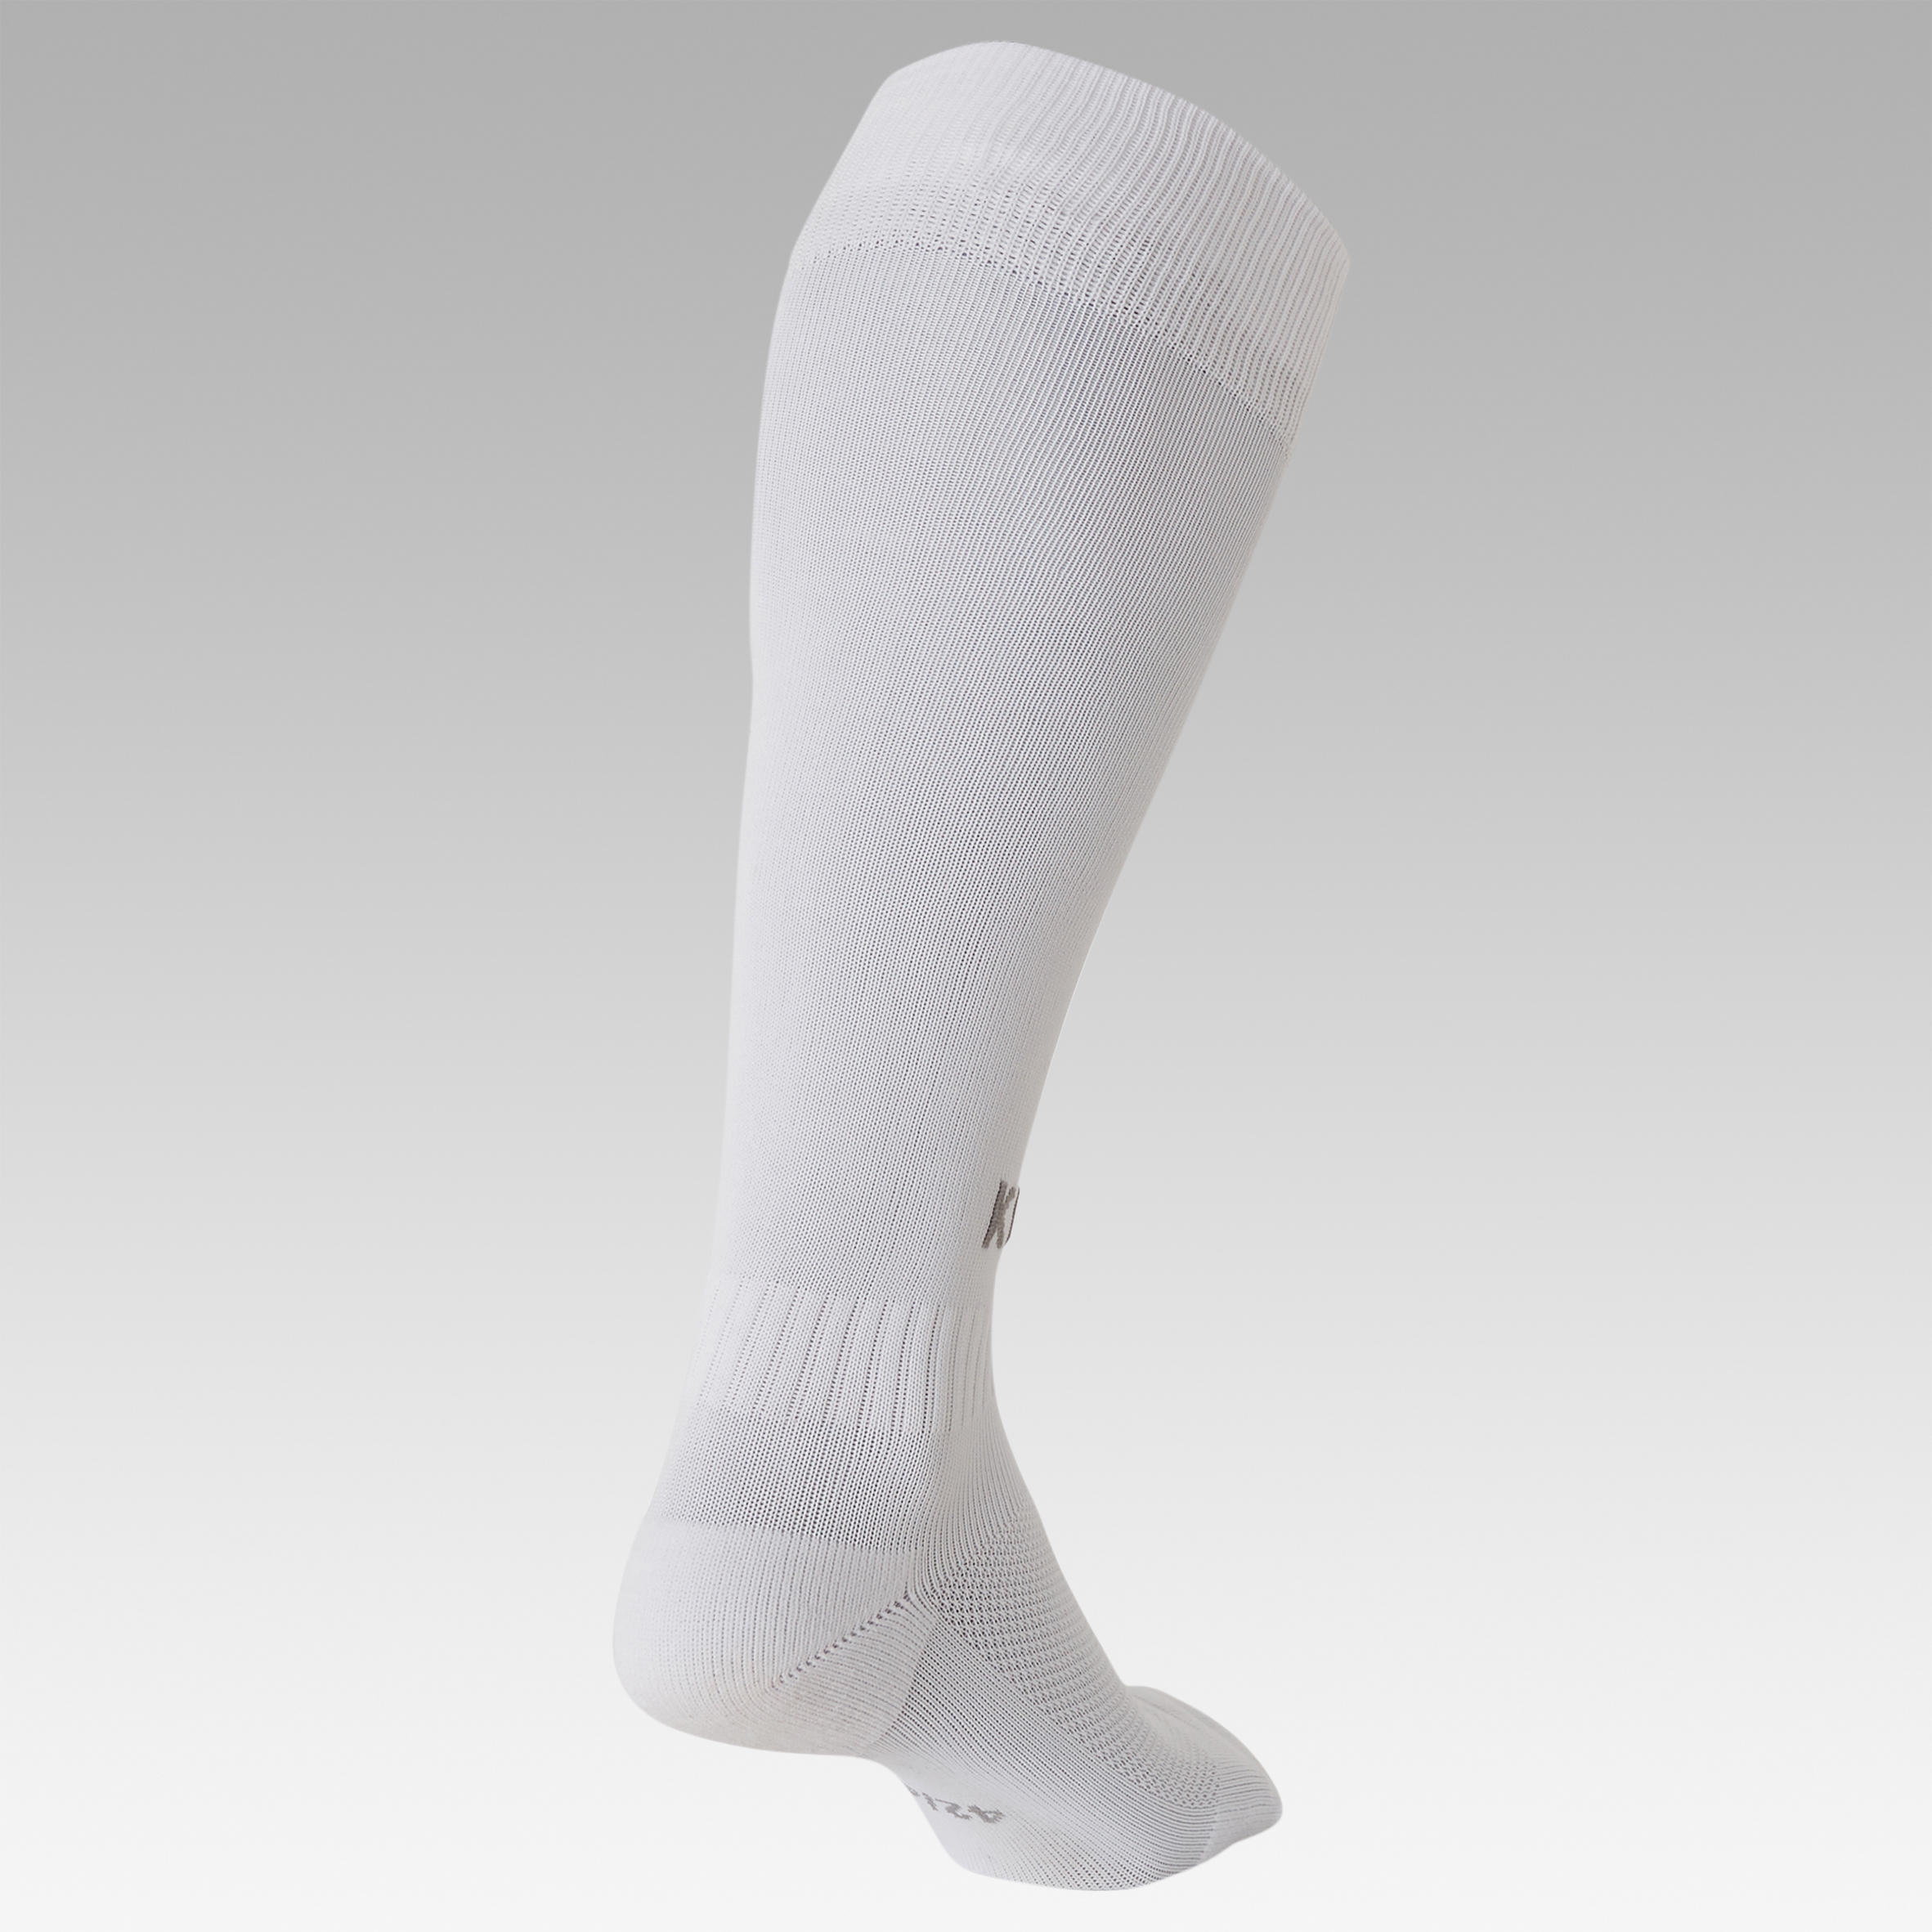 Adult Football Socks Essential - White 4/16